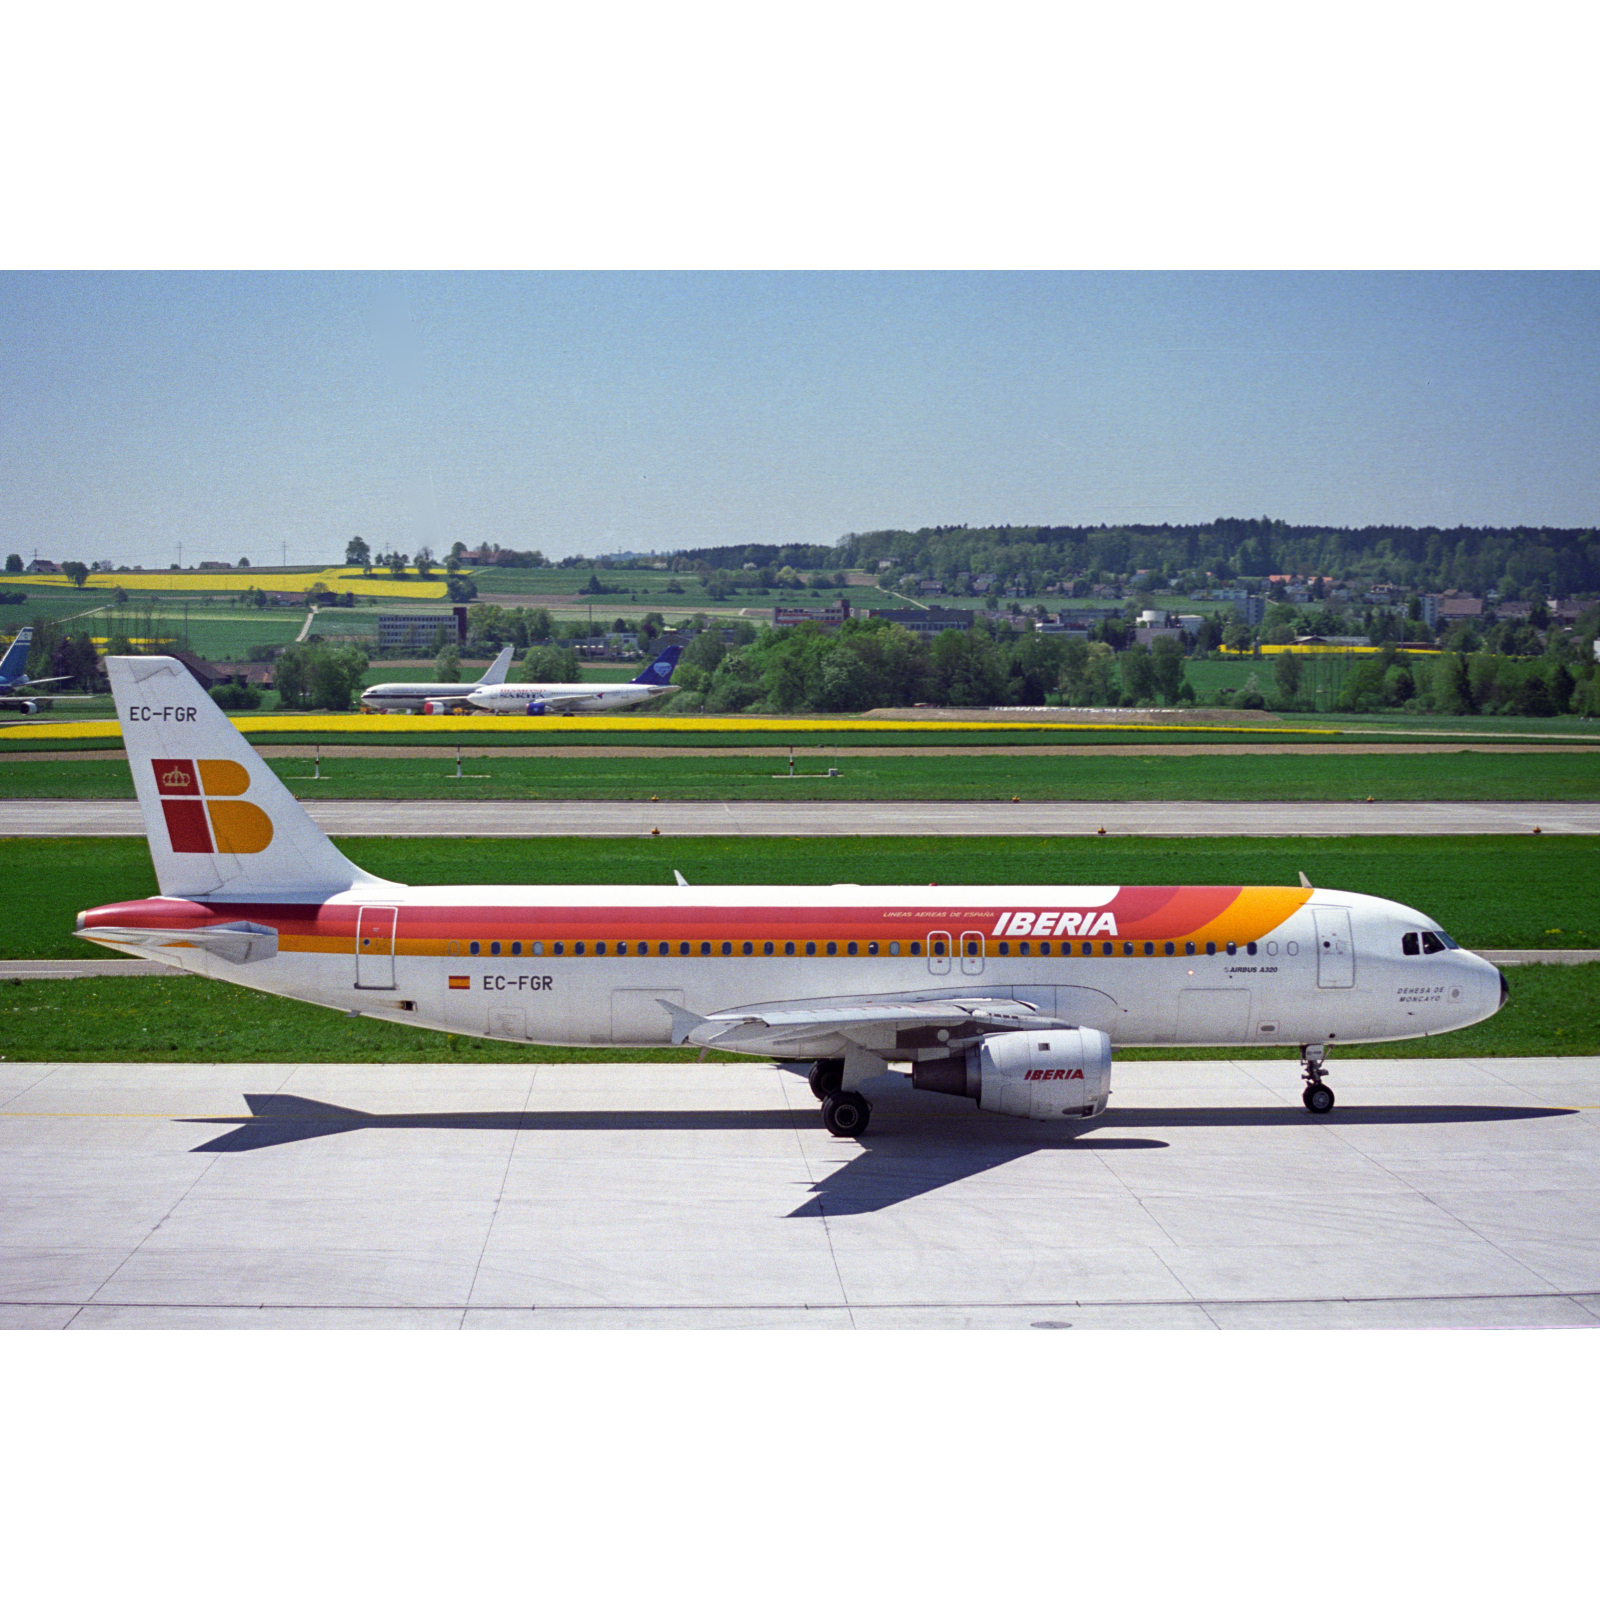 Aviationtag Iberia - Airbus A320 - EC-FGR